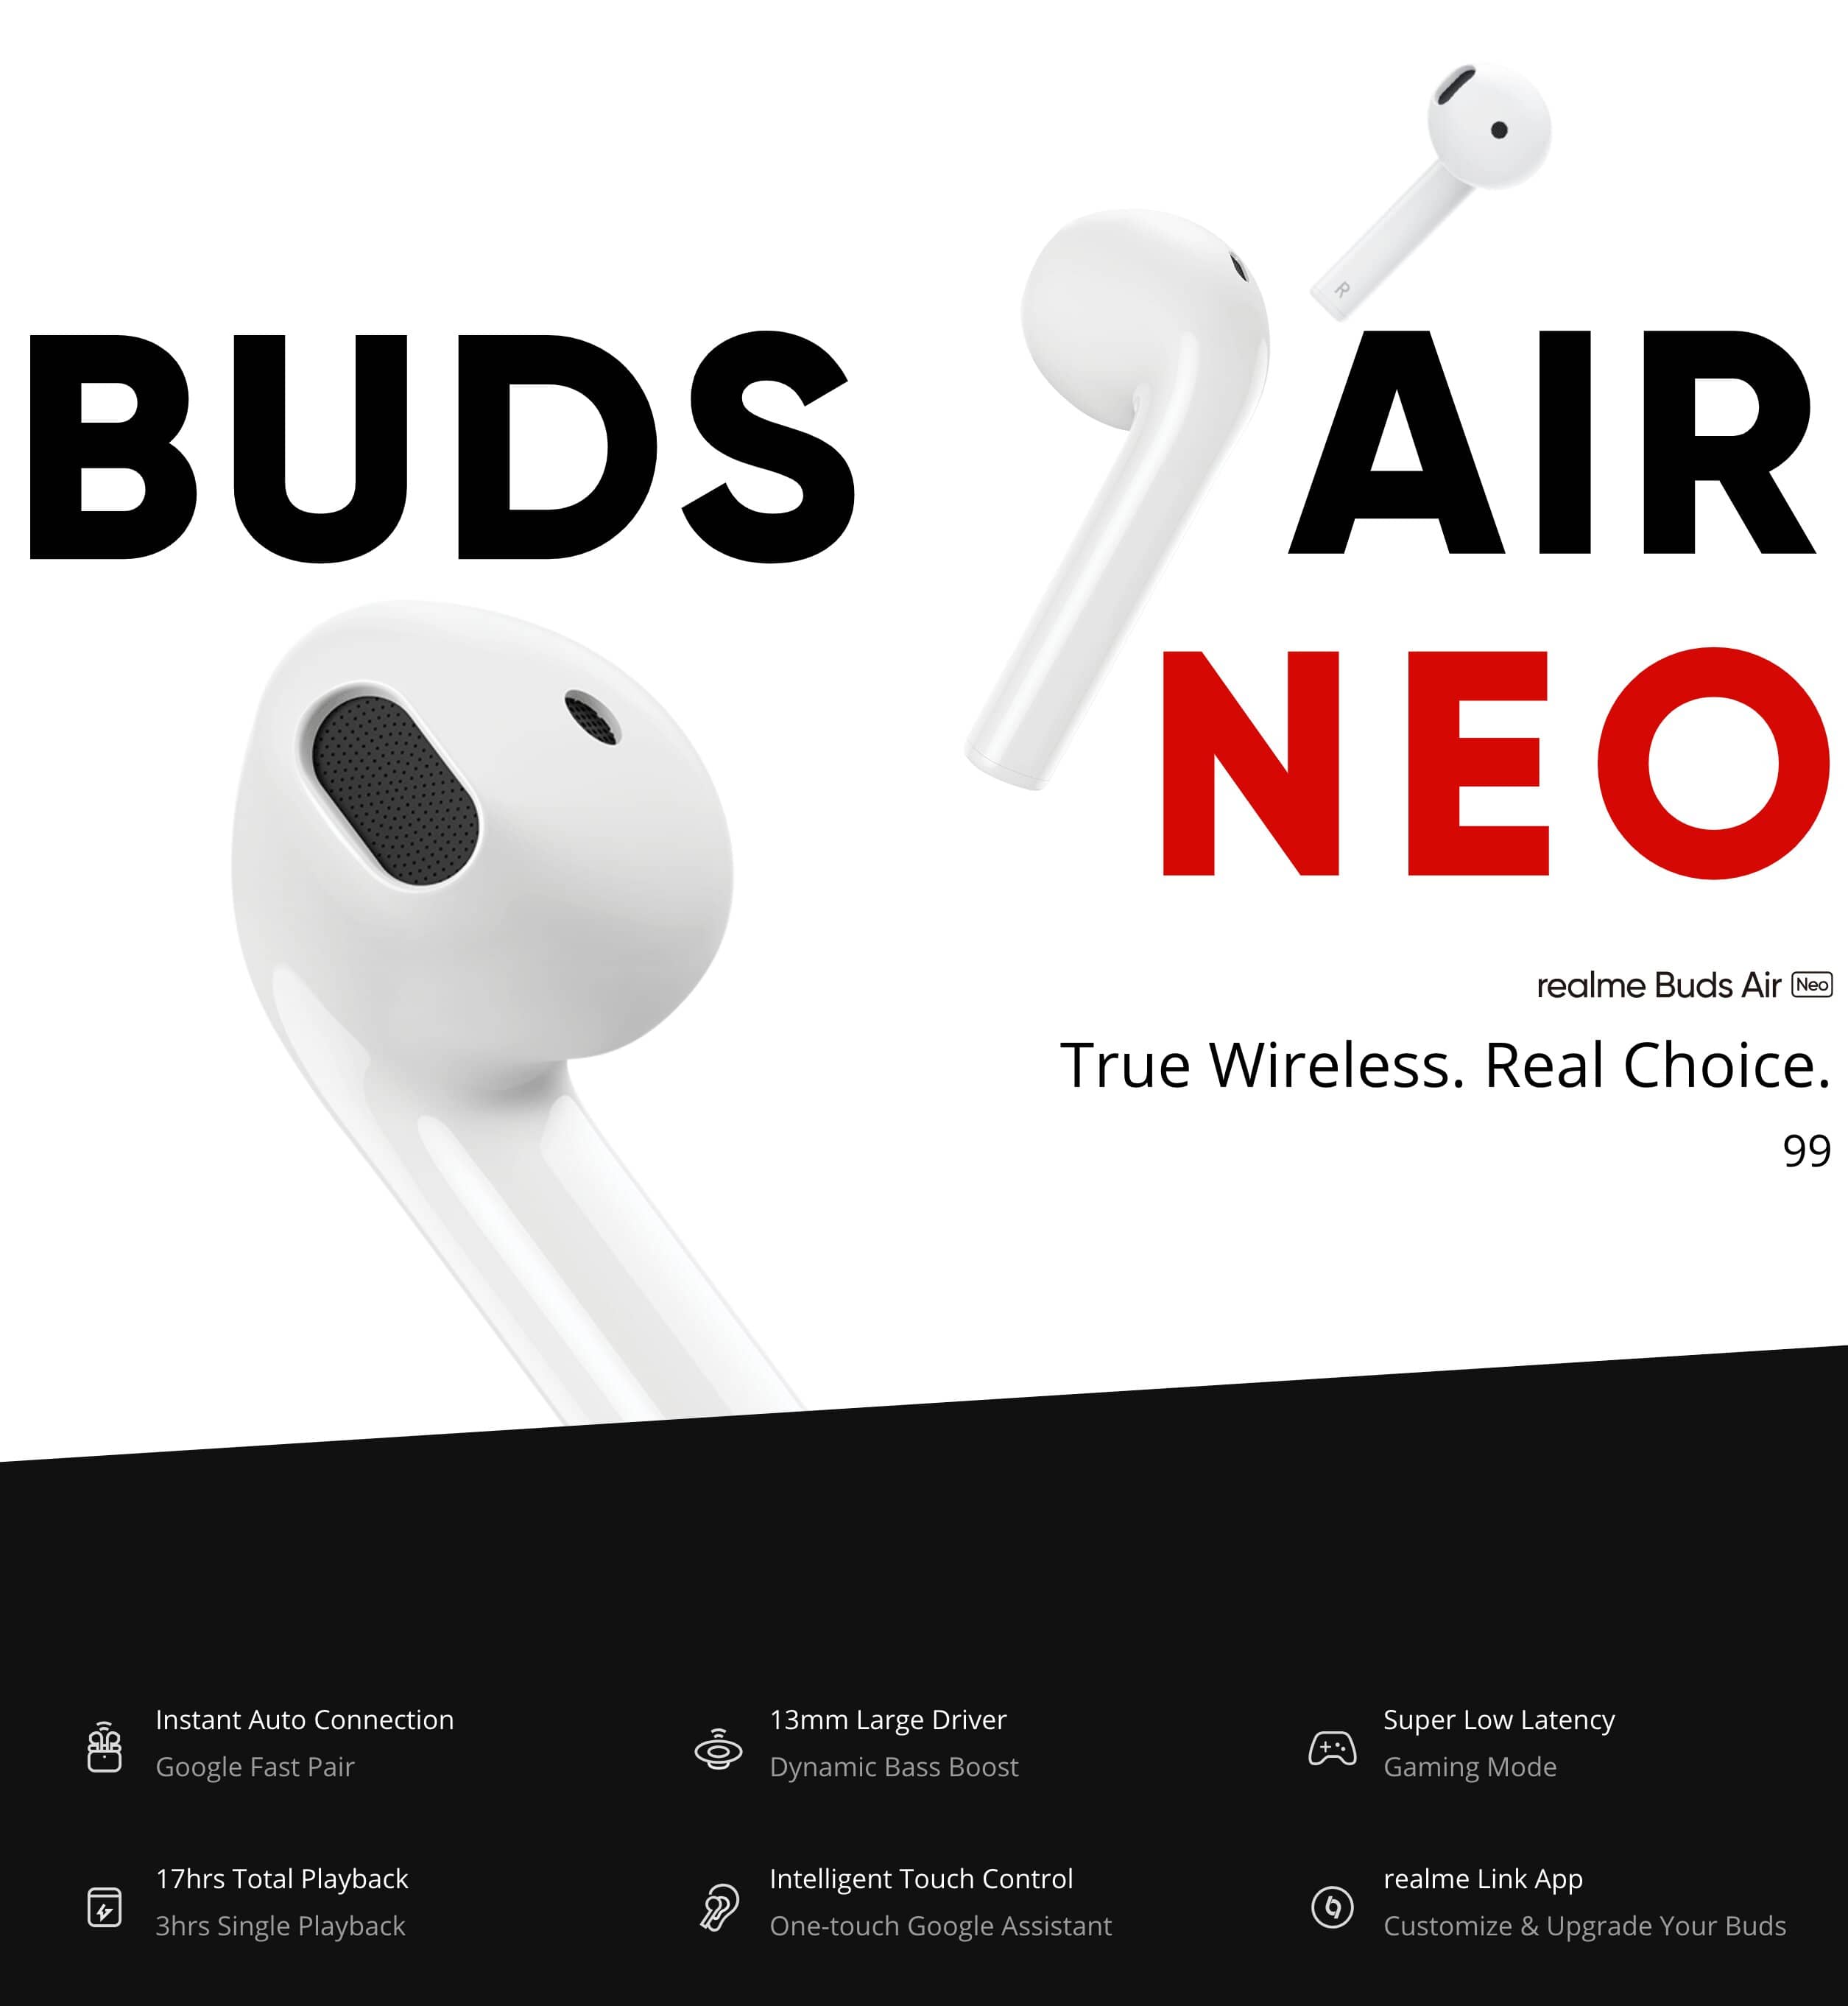 Realme Buds Air Neo Singapore